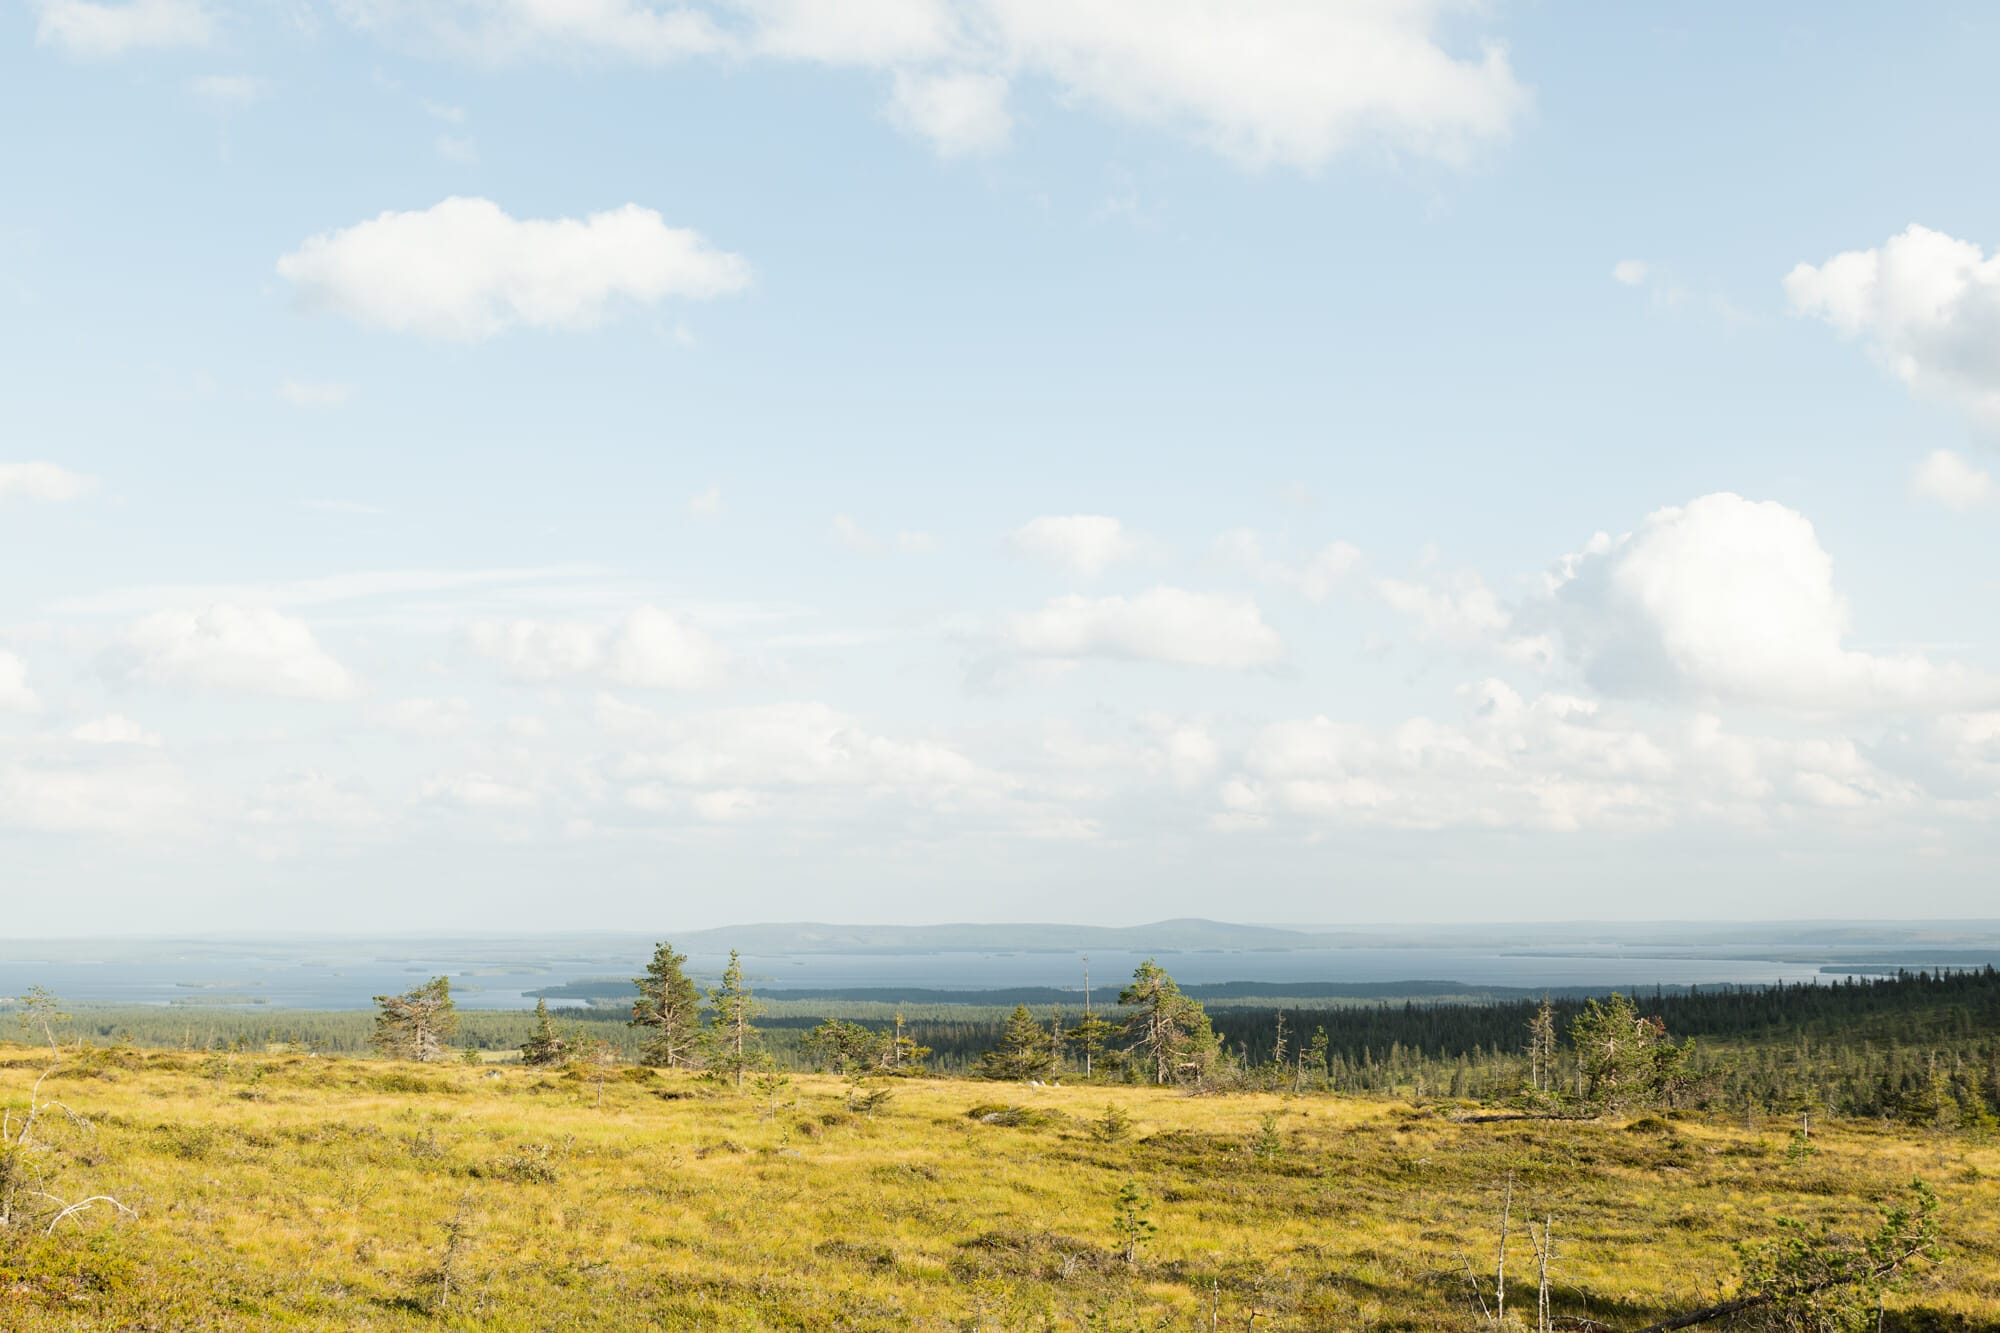 Rando dans le parc national de Riisitunturi en Laponie finlandaise